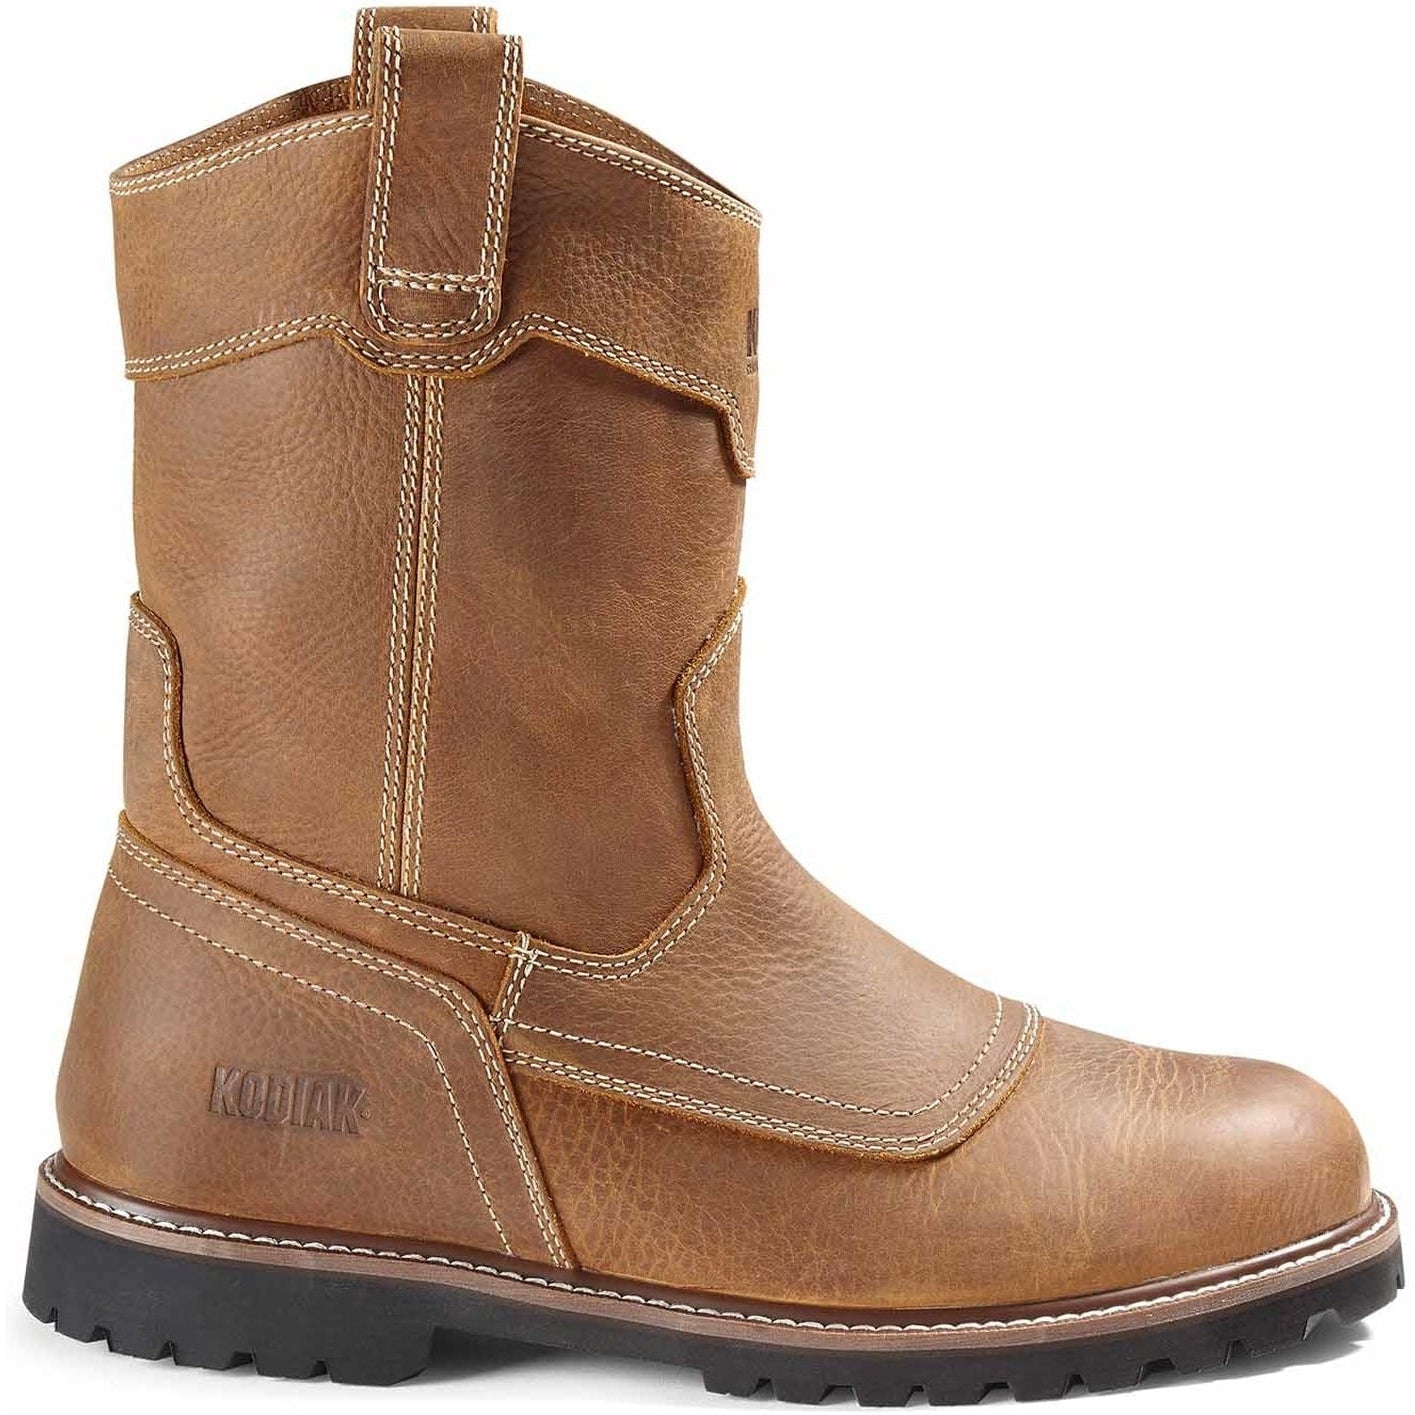 Kodiak Men's Mckinney Wellington Unlined Pull On Work Boot -Wheat- 4TETWT 7 / Wide / Wheat - Overlook Boots